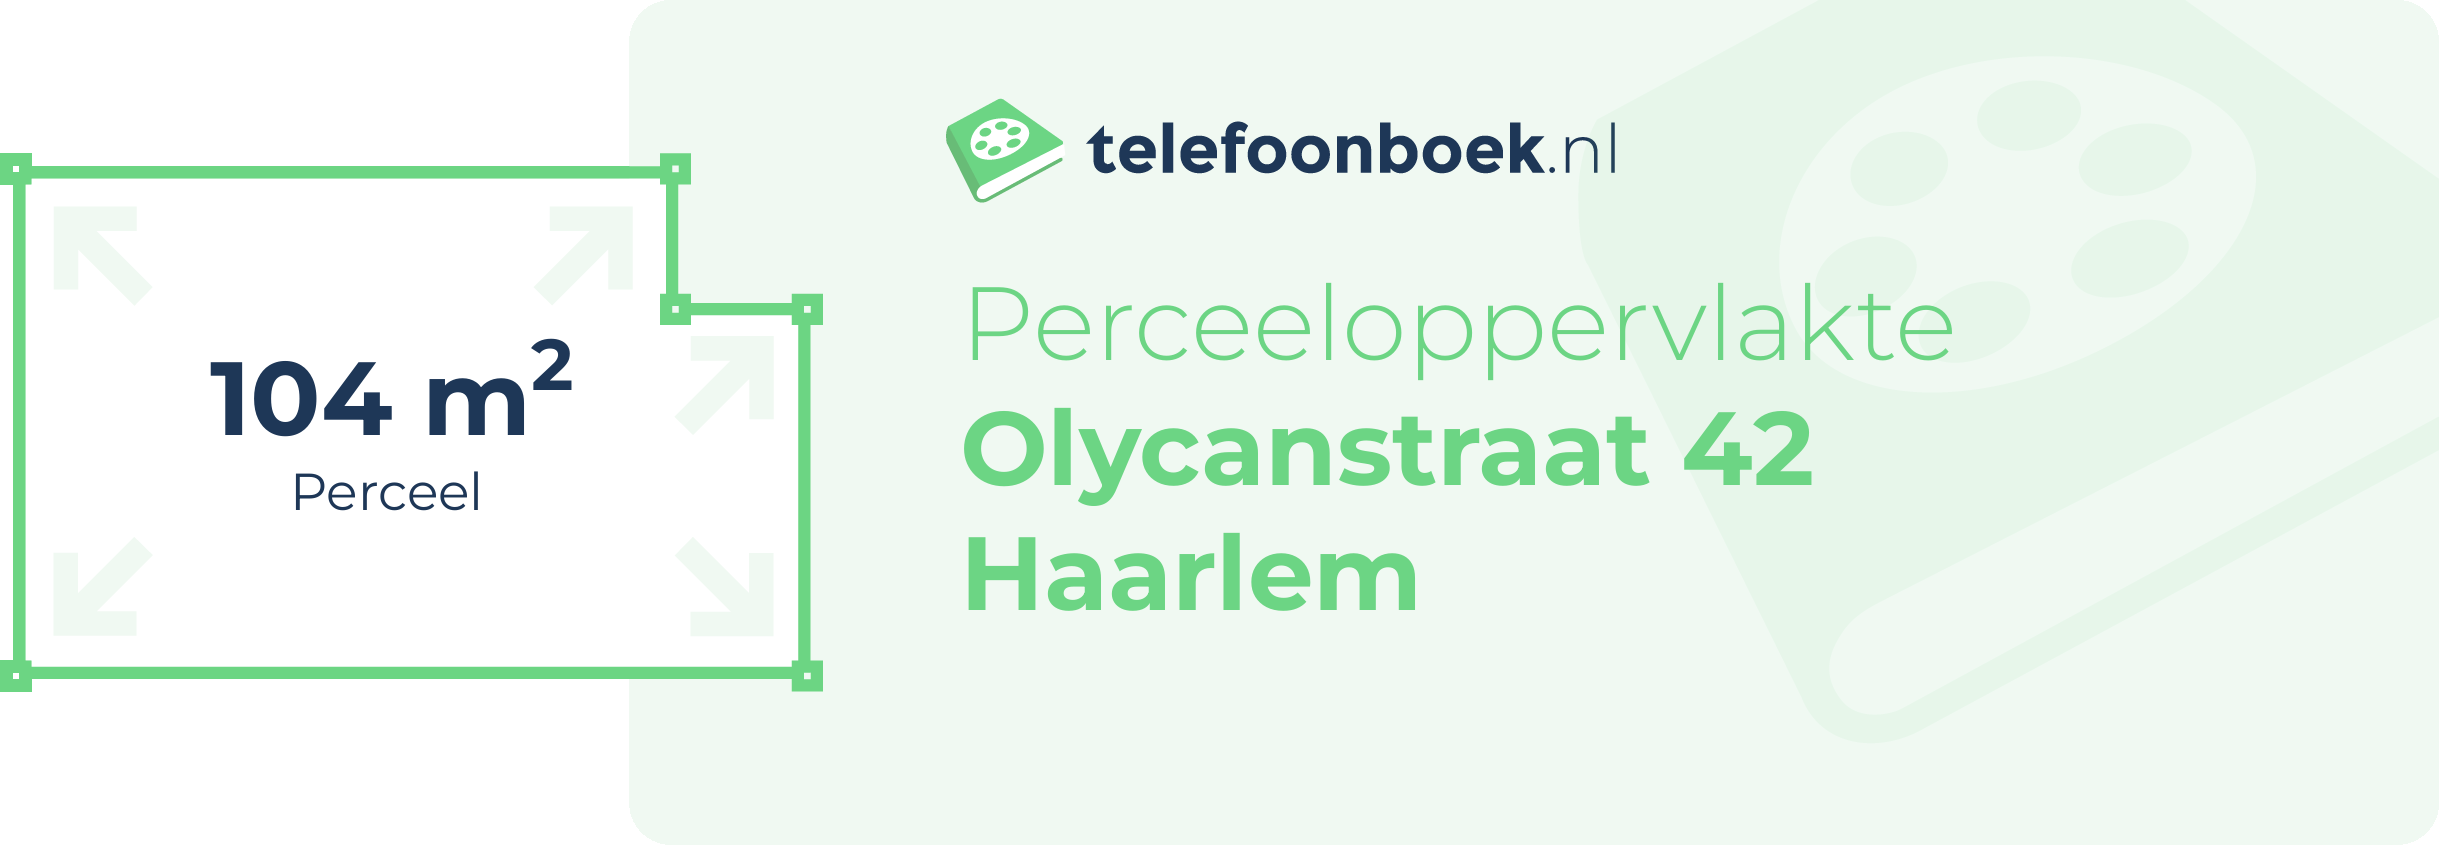 Perceeloppervlakte Olycanstraat 42 Haarlem